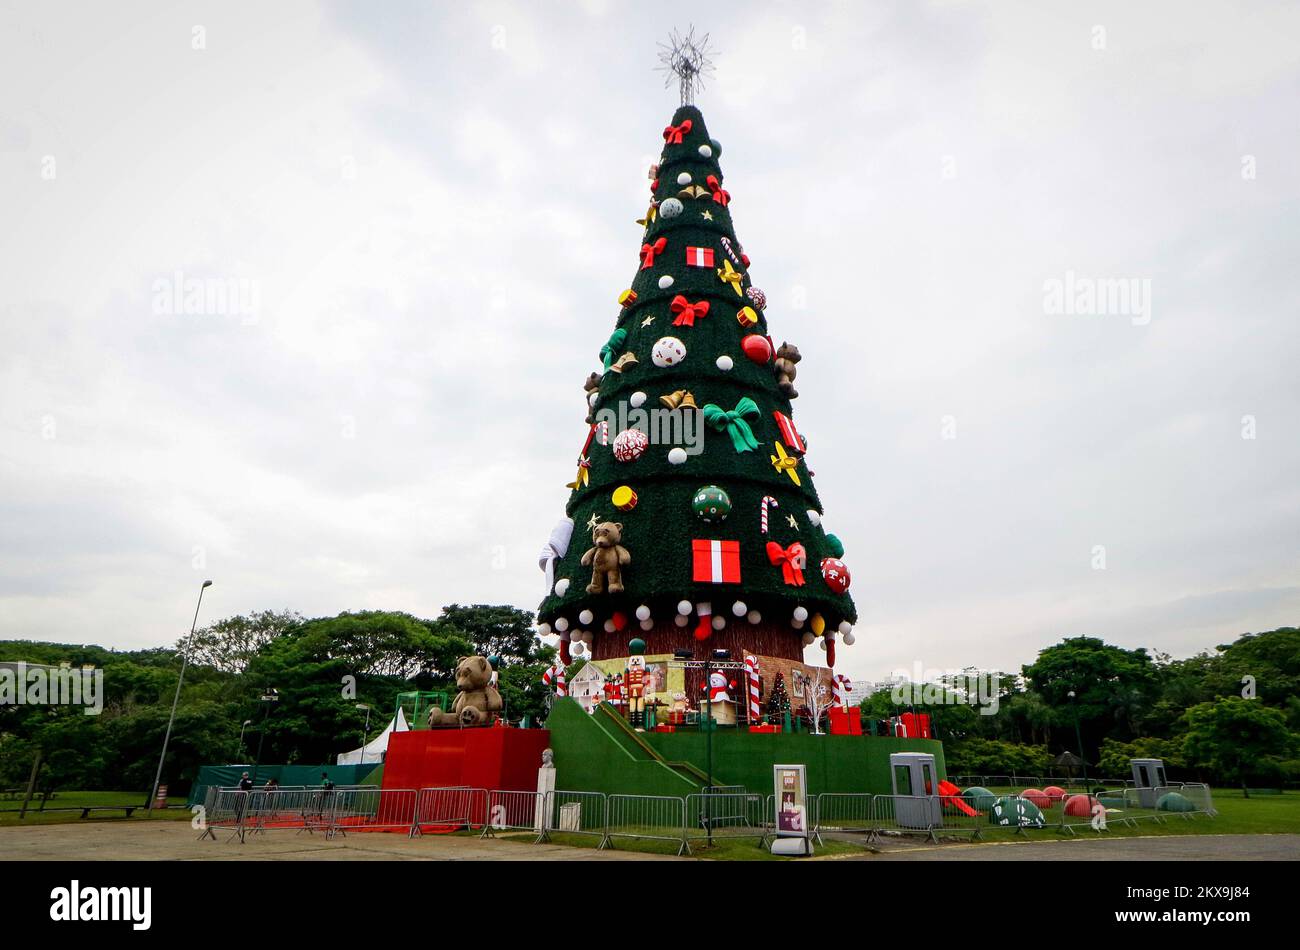 São PAULO, SP : Árvore DE NATAL NO VILLA LOBOS - El famoso  árbol de Navidad, de 52 metros de altura y con un espacio interactivo, sale  este año del Parque